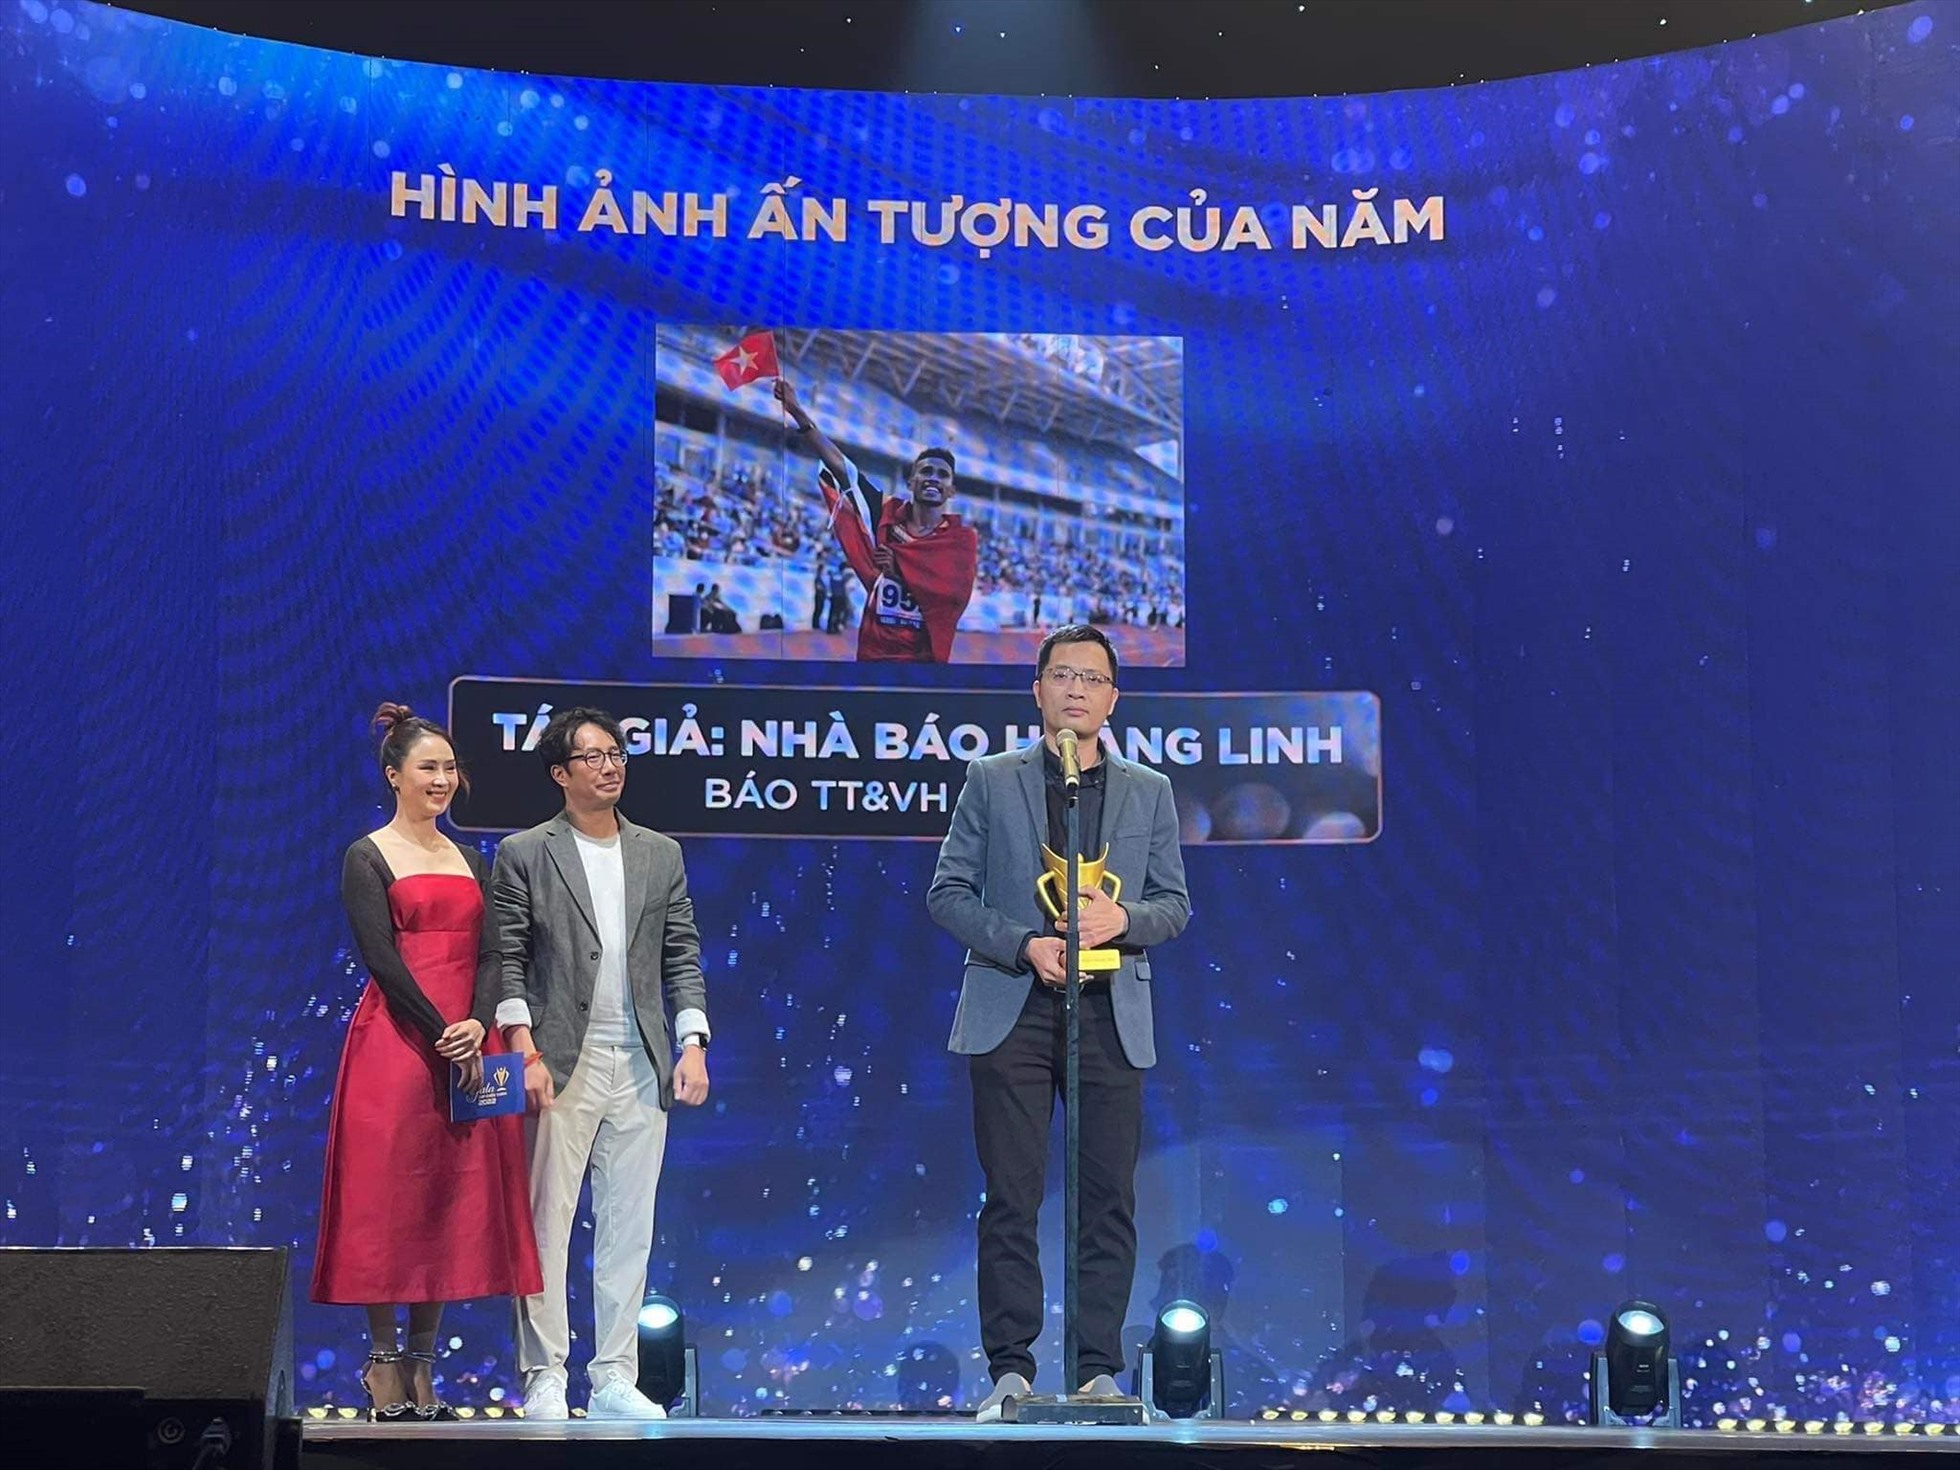 Nhà báo Hoàng Linh trên bục nhận giải thưởng. Ảnh: